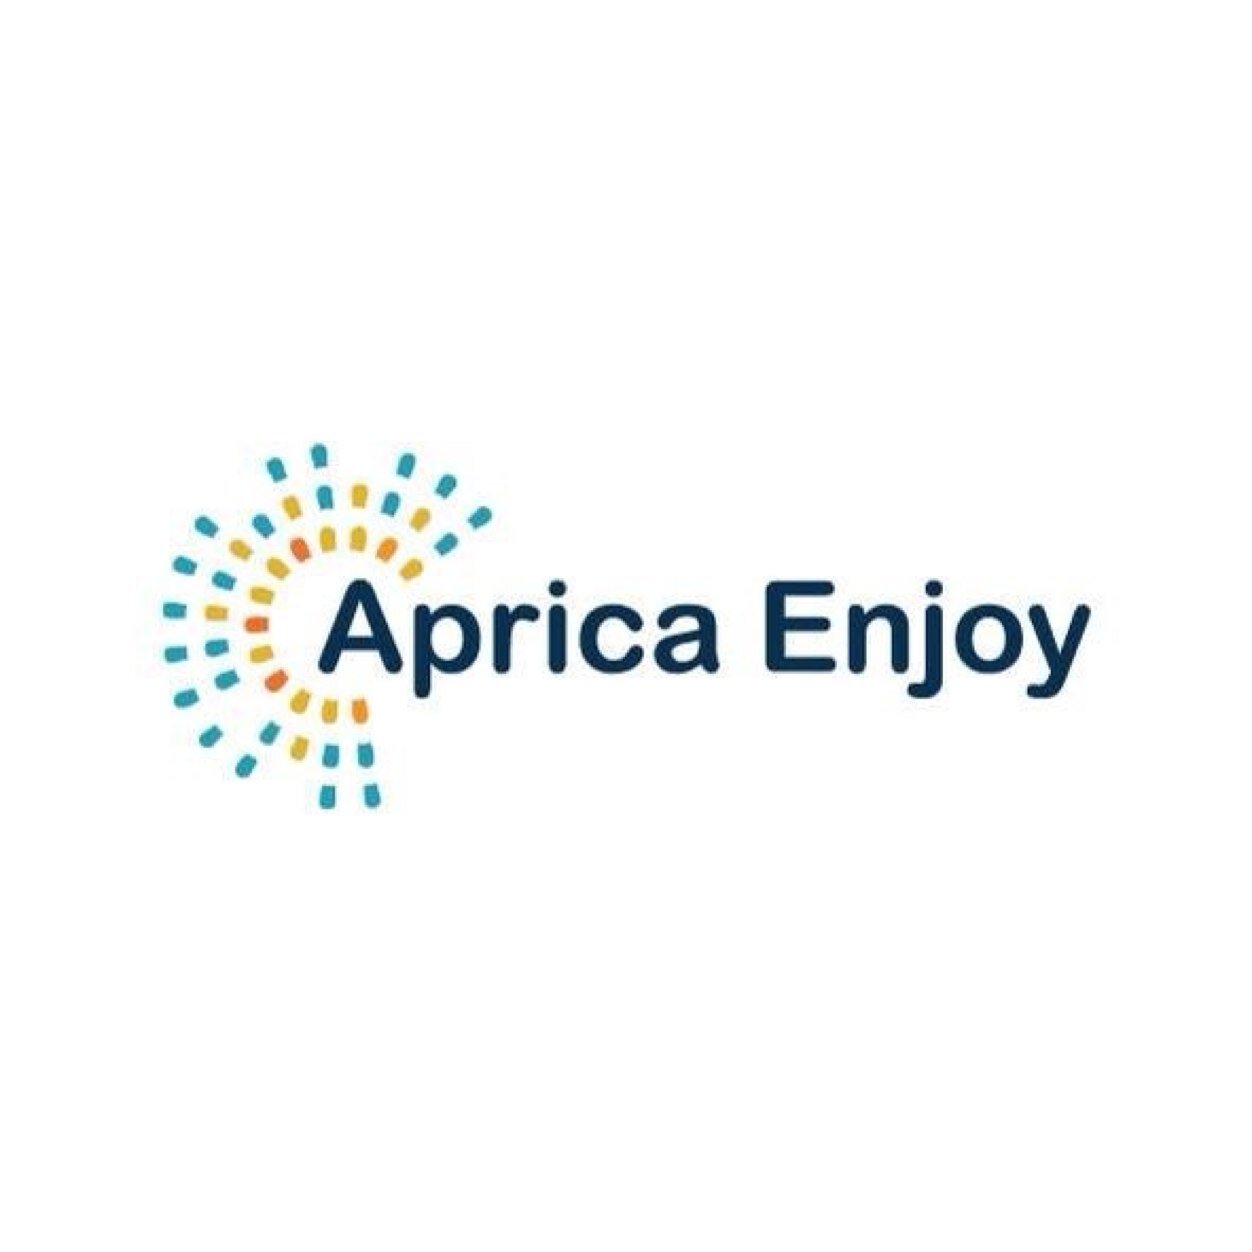 Aprica Enjoy è il portale che vi terrà informati riguardo tutti gli eventi e le attività che si svolgeranno in questa magnifica location di montagna